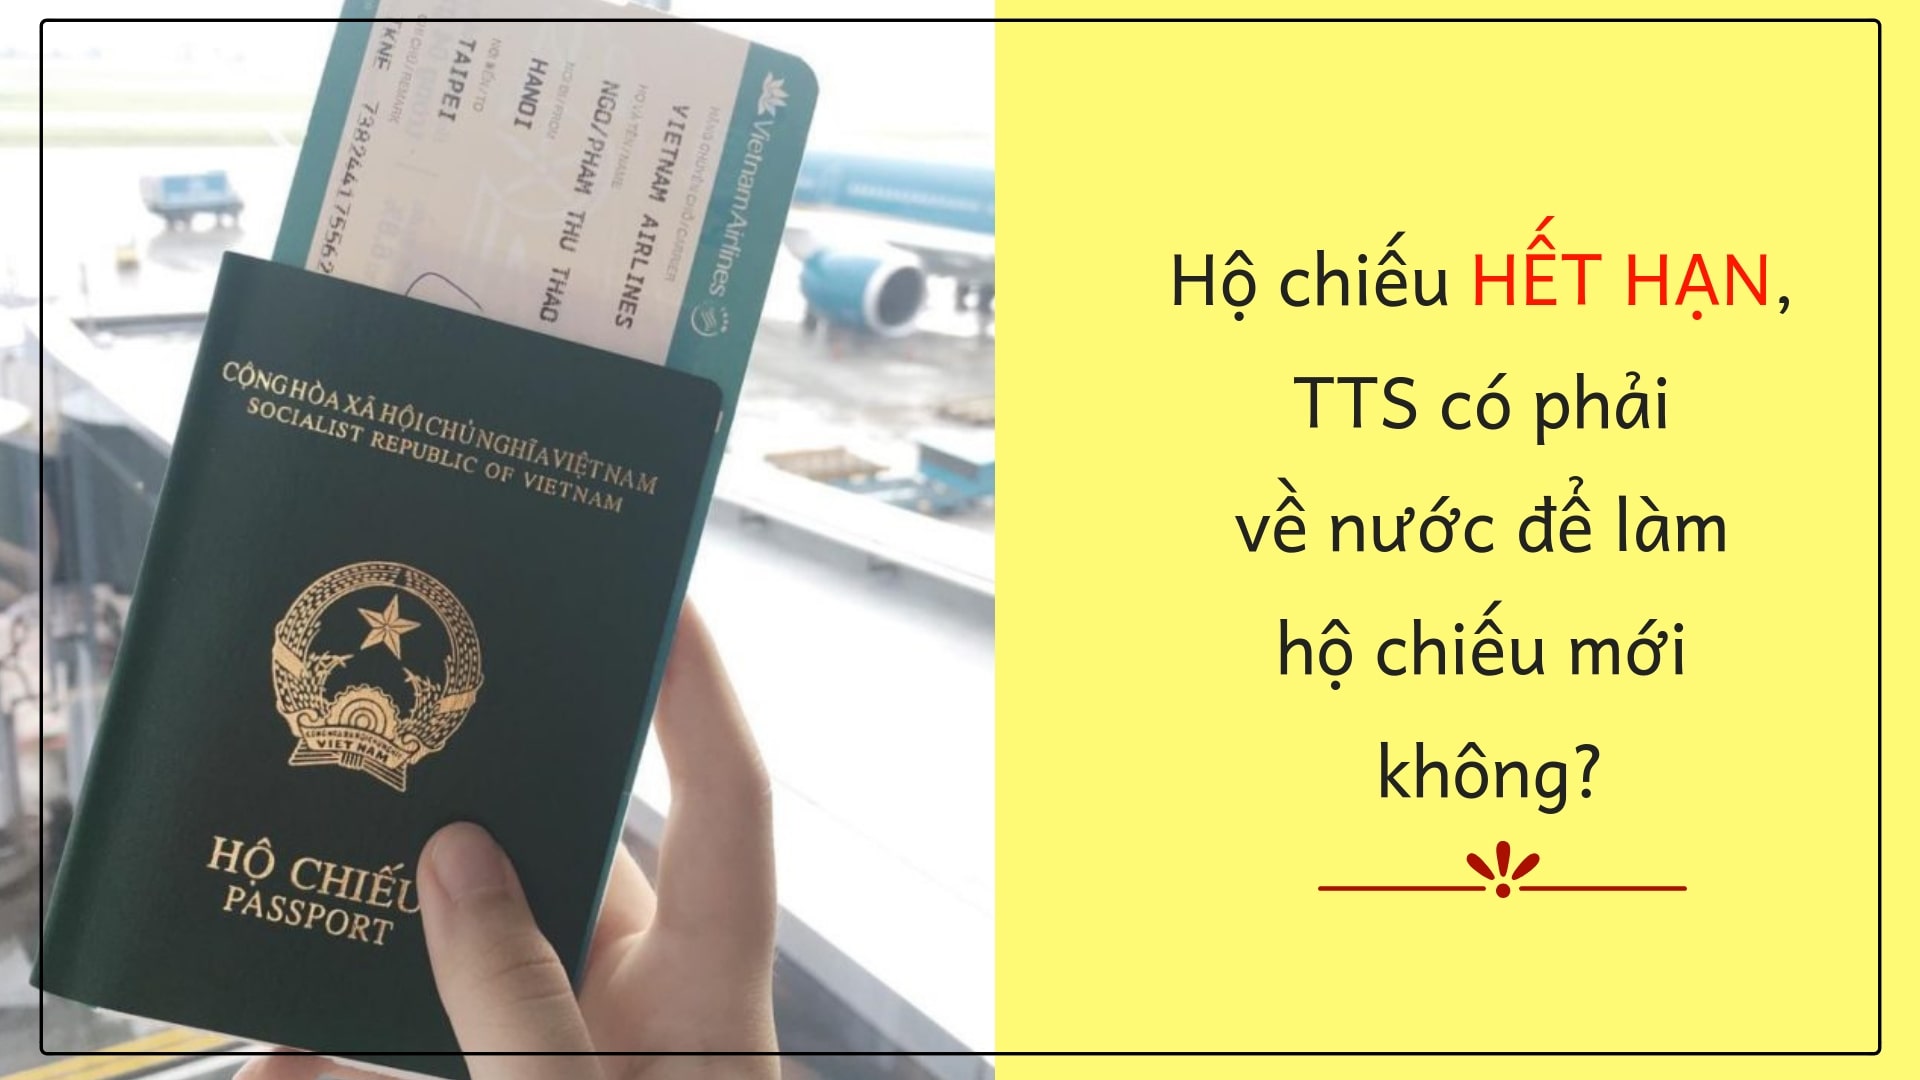 ​Hộ chiếu hết hạn, TTS có phải về nước để làm hộ chiếu mới không?